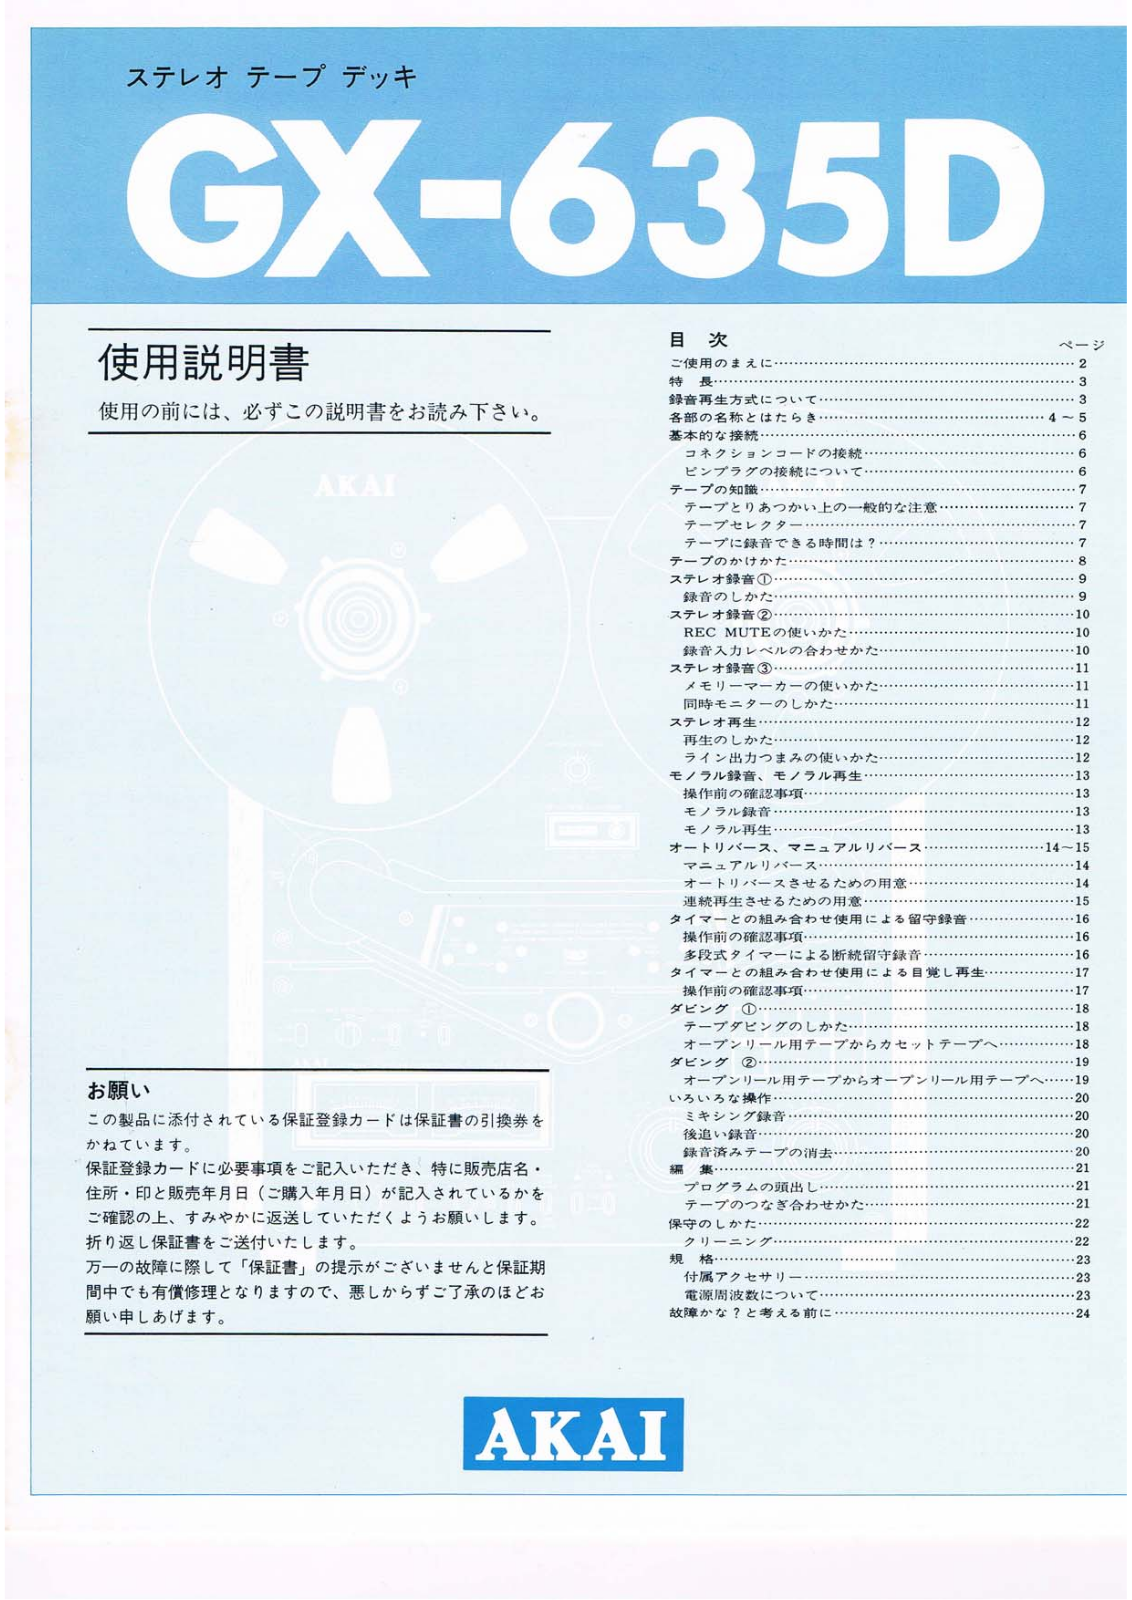 Akai GX-635D Manual